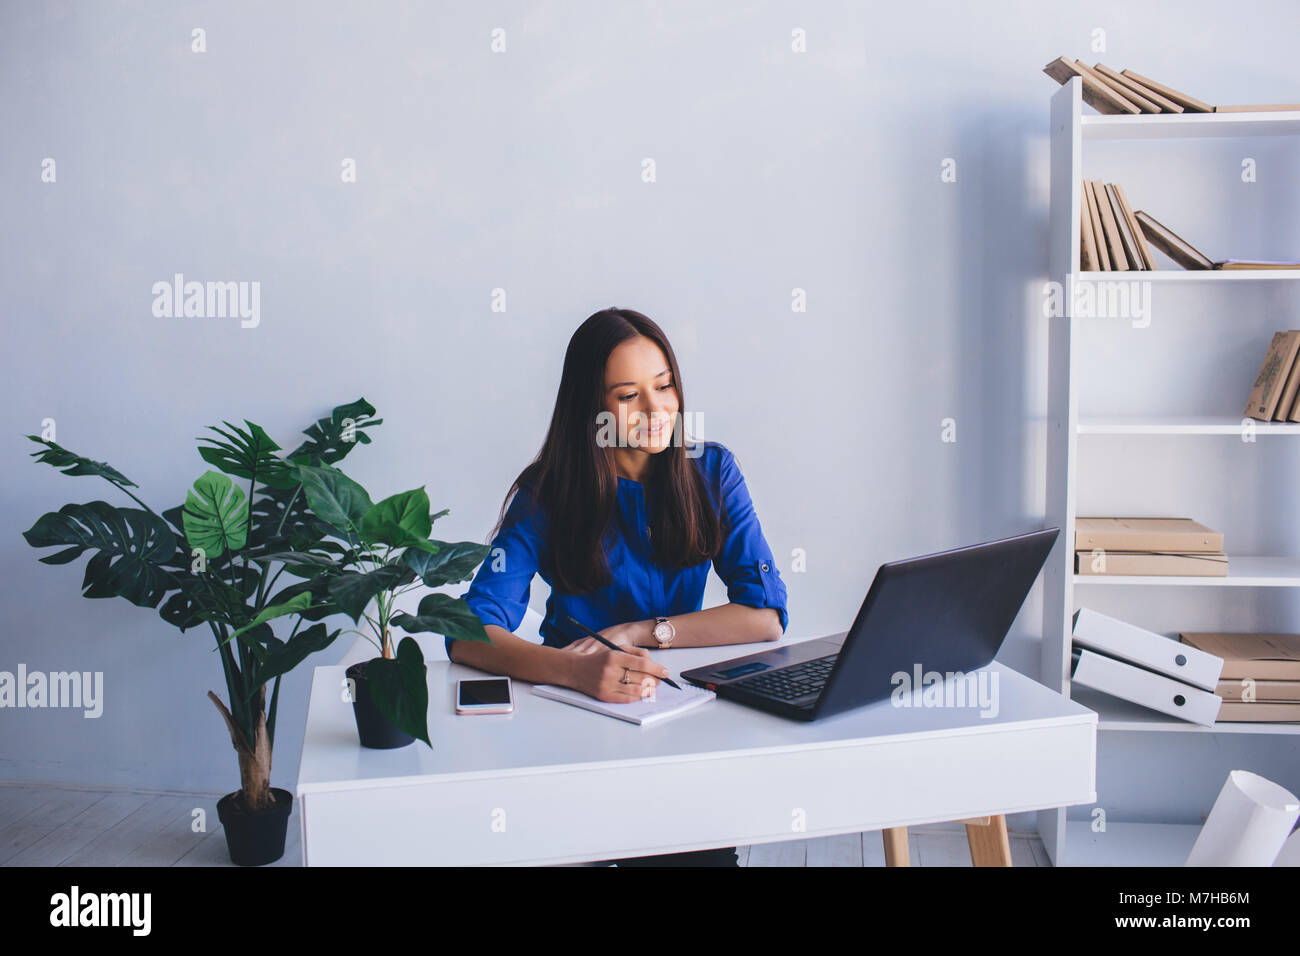 Selbstbewussten jungen Frau, die ihr Geschäft Arbeitstag Planung, Hinweis im Tagebuch schreiben, beim Sitzen an Ihrem Arbeitsplatz im Büro Stockfoto